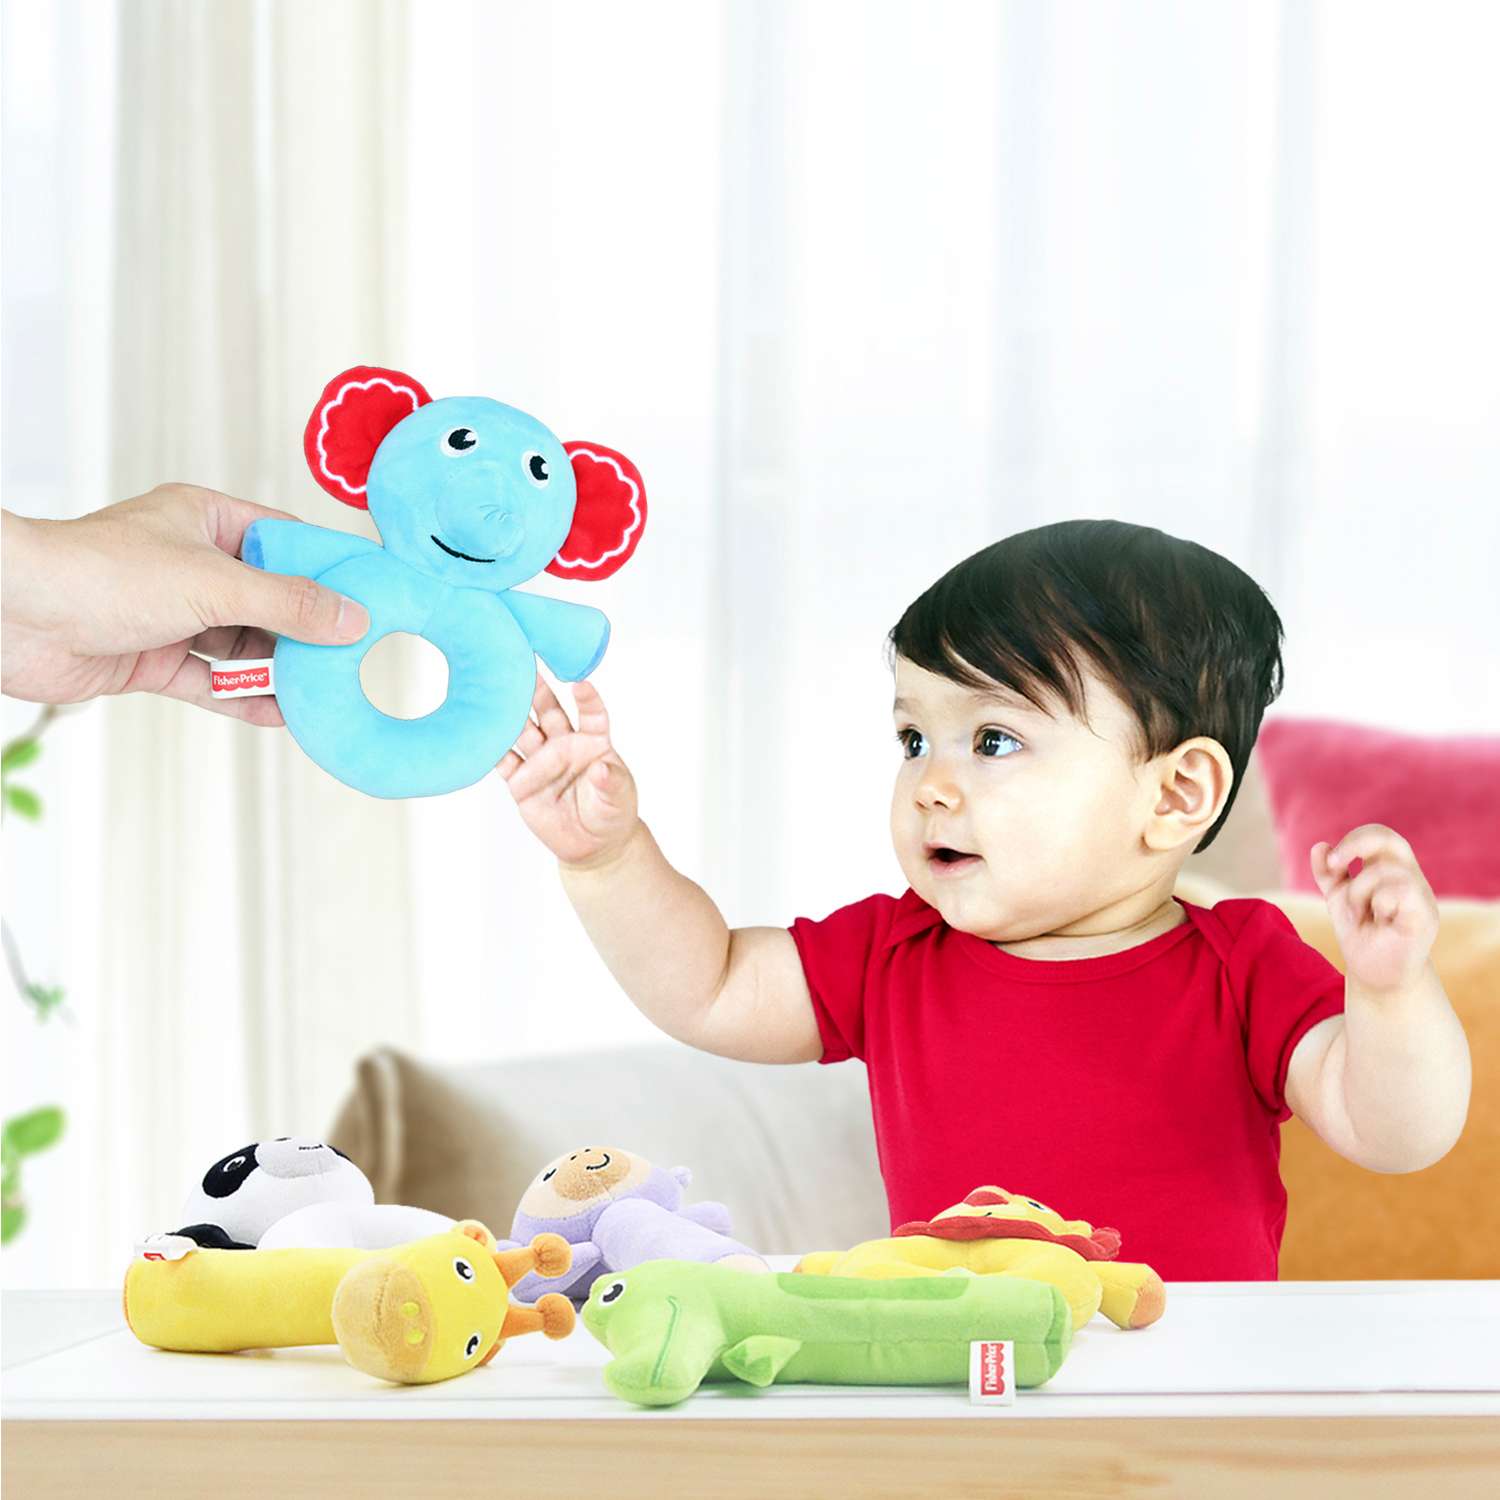 Погремушка-колечко Fisher Price Львенок развивающая мягкая игрушка для детей 0+ - фото 6